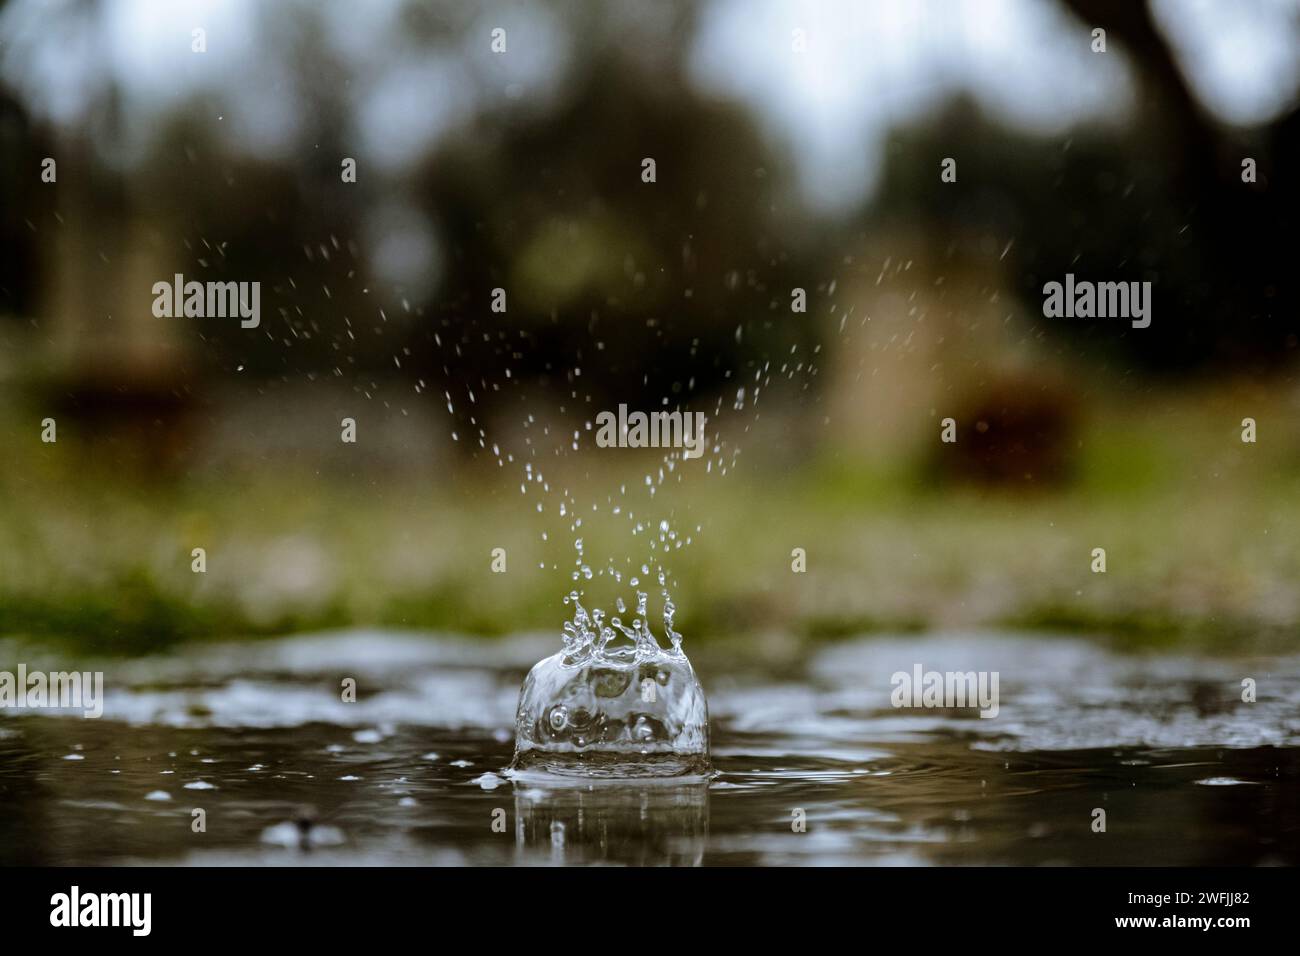 Gocce di poesia nell'istante: la grazia di una singola goccia d'acqua e i suoi schizzi, un'arte liquida congelata Stock Photo